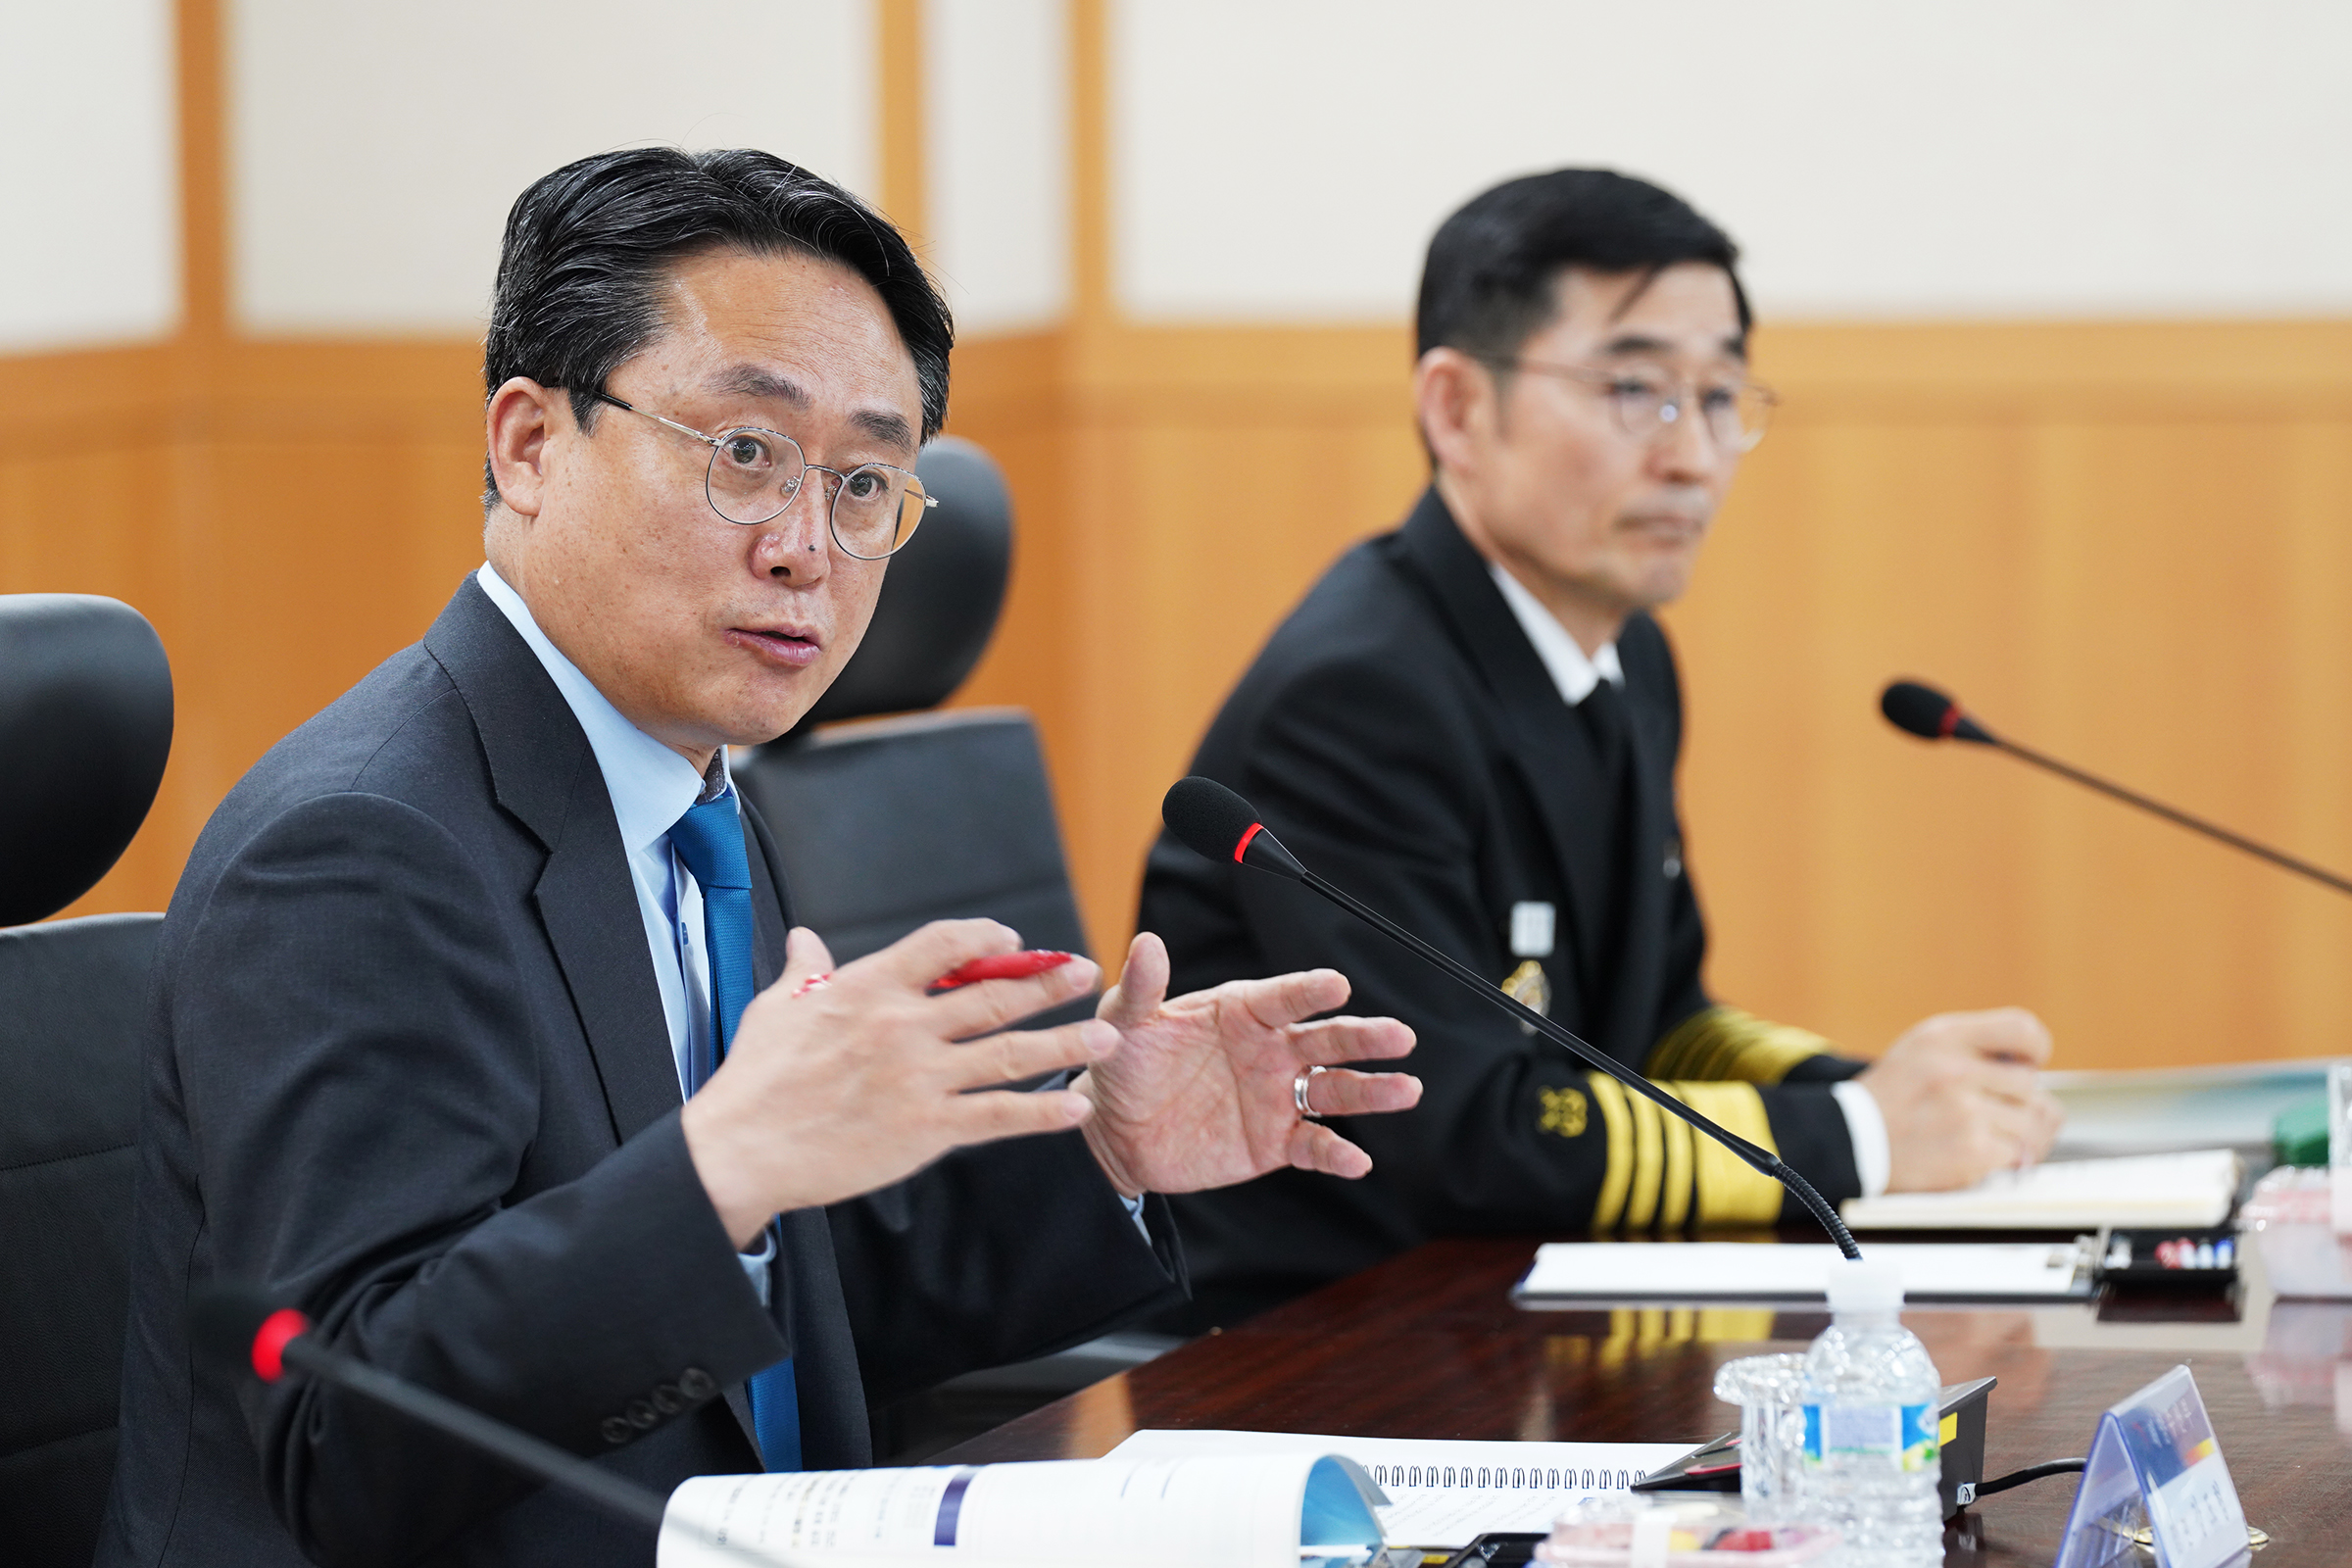 제3회 해수부·해군·해경 정책협의회 개최(24